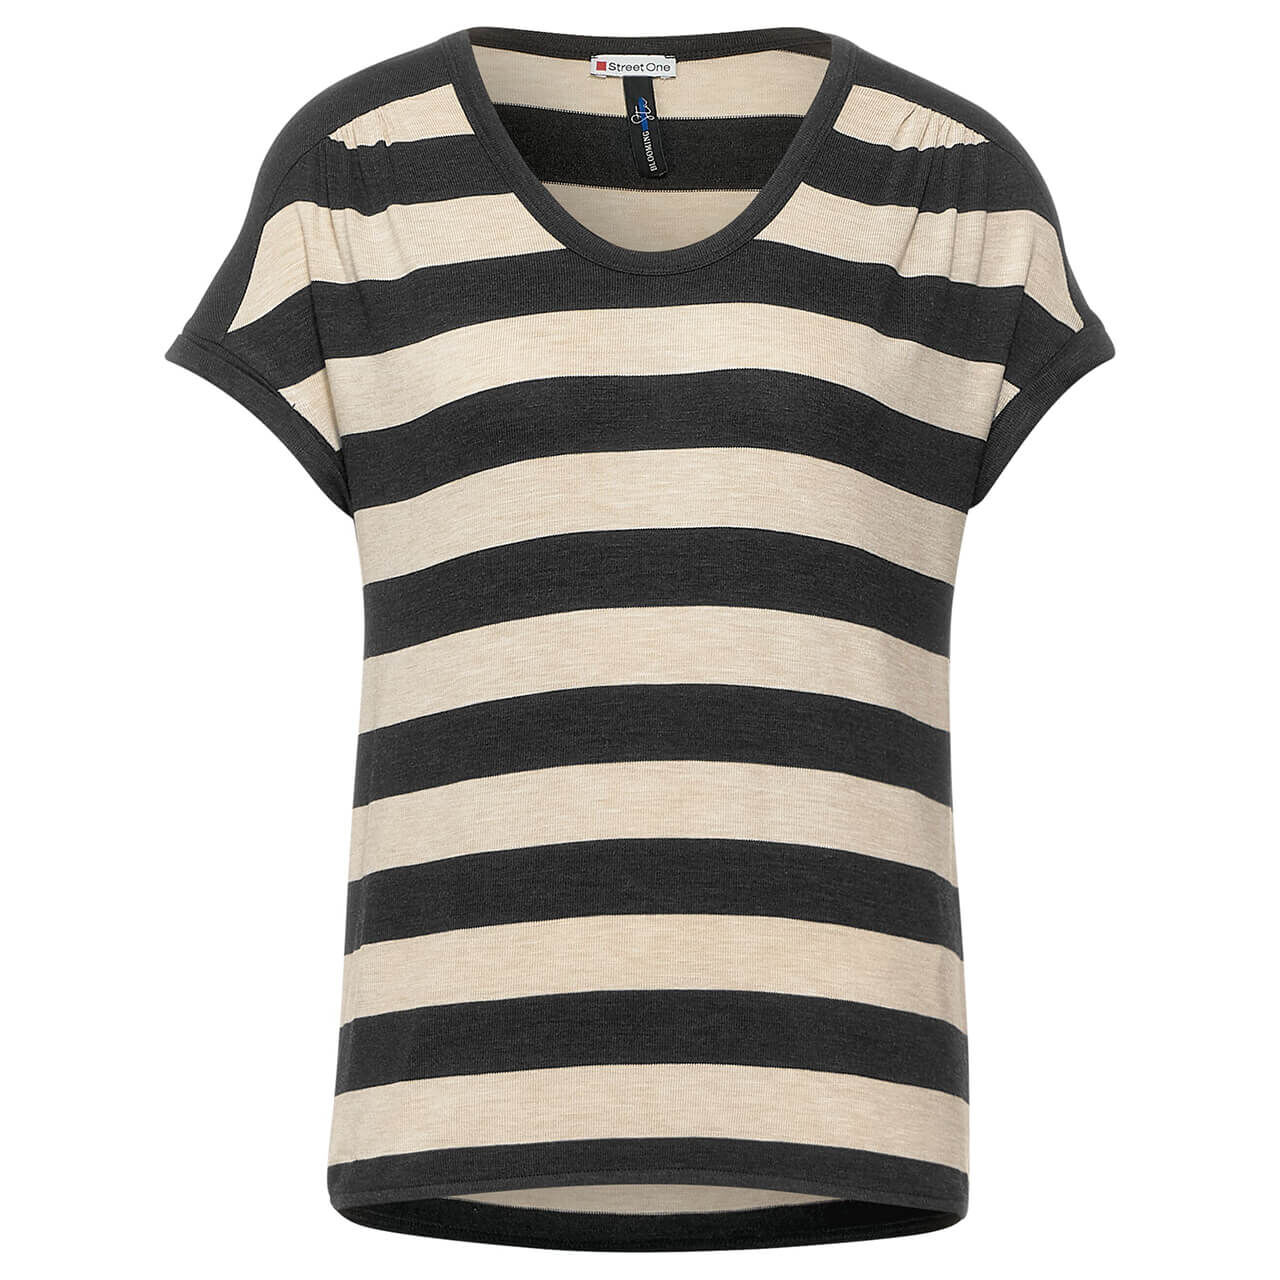 Street One T-Shirt für Damen in Dunkelgrau gestreift, FarbNr.: 21498